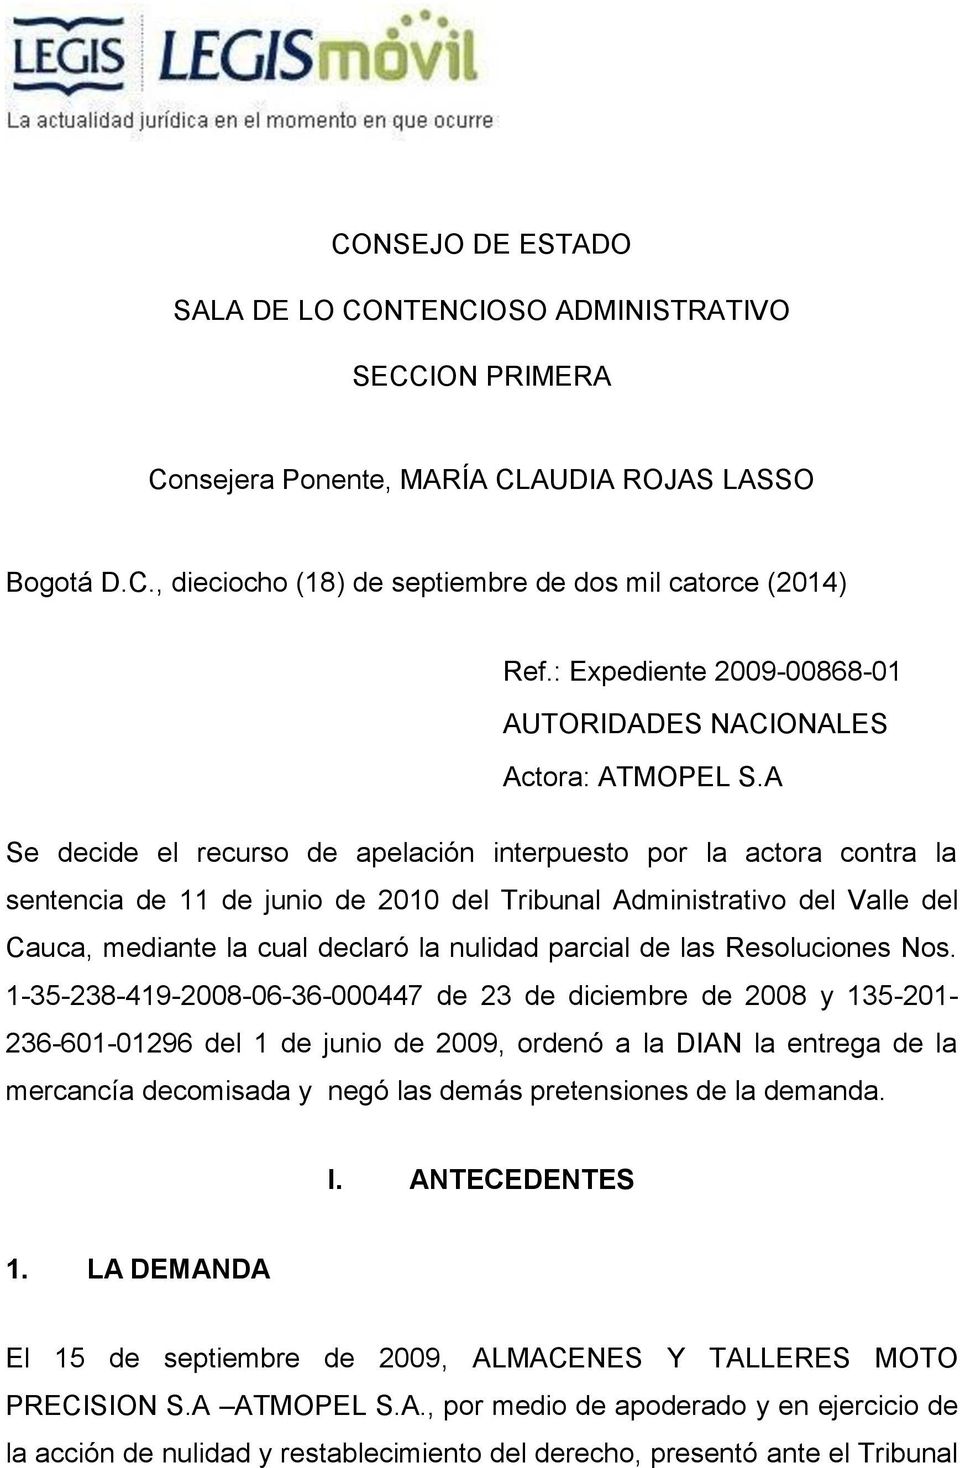 A Se decide el recurso de apelación interpuesto por la actora contra la sentencia de 11 de junio de 2010 del Tribunal Administrativo del Valle del Cauca, mediante la cual declaró la nulidad parcial